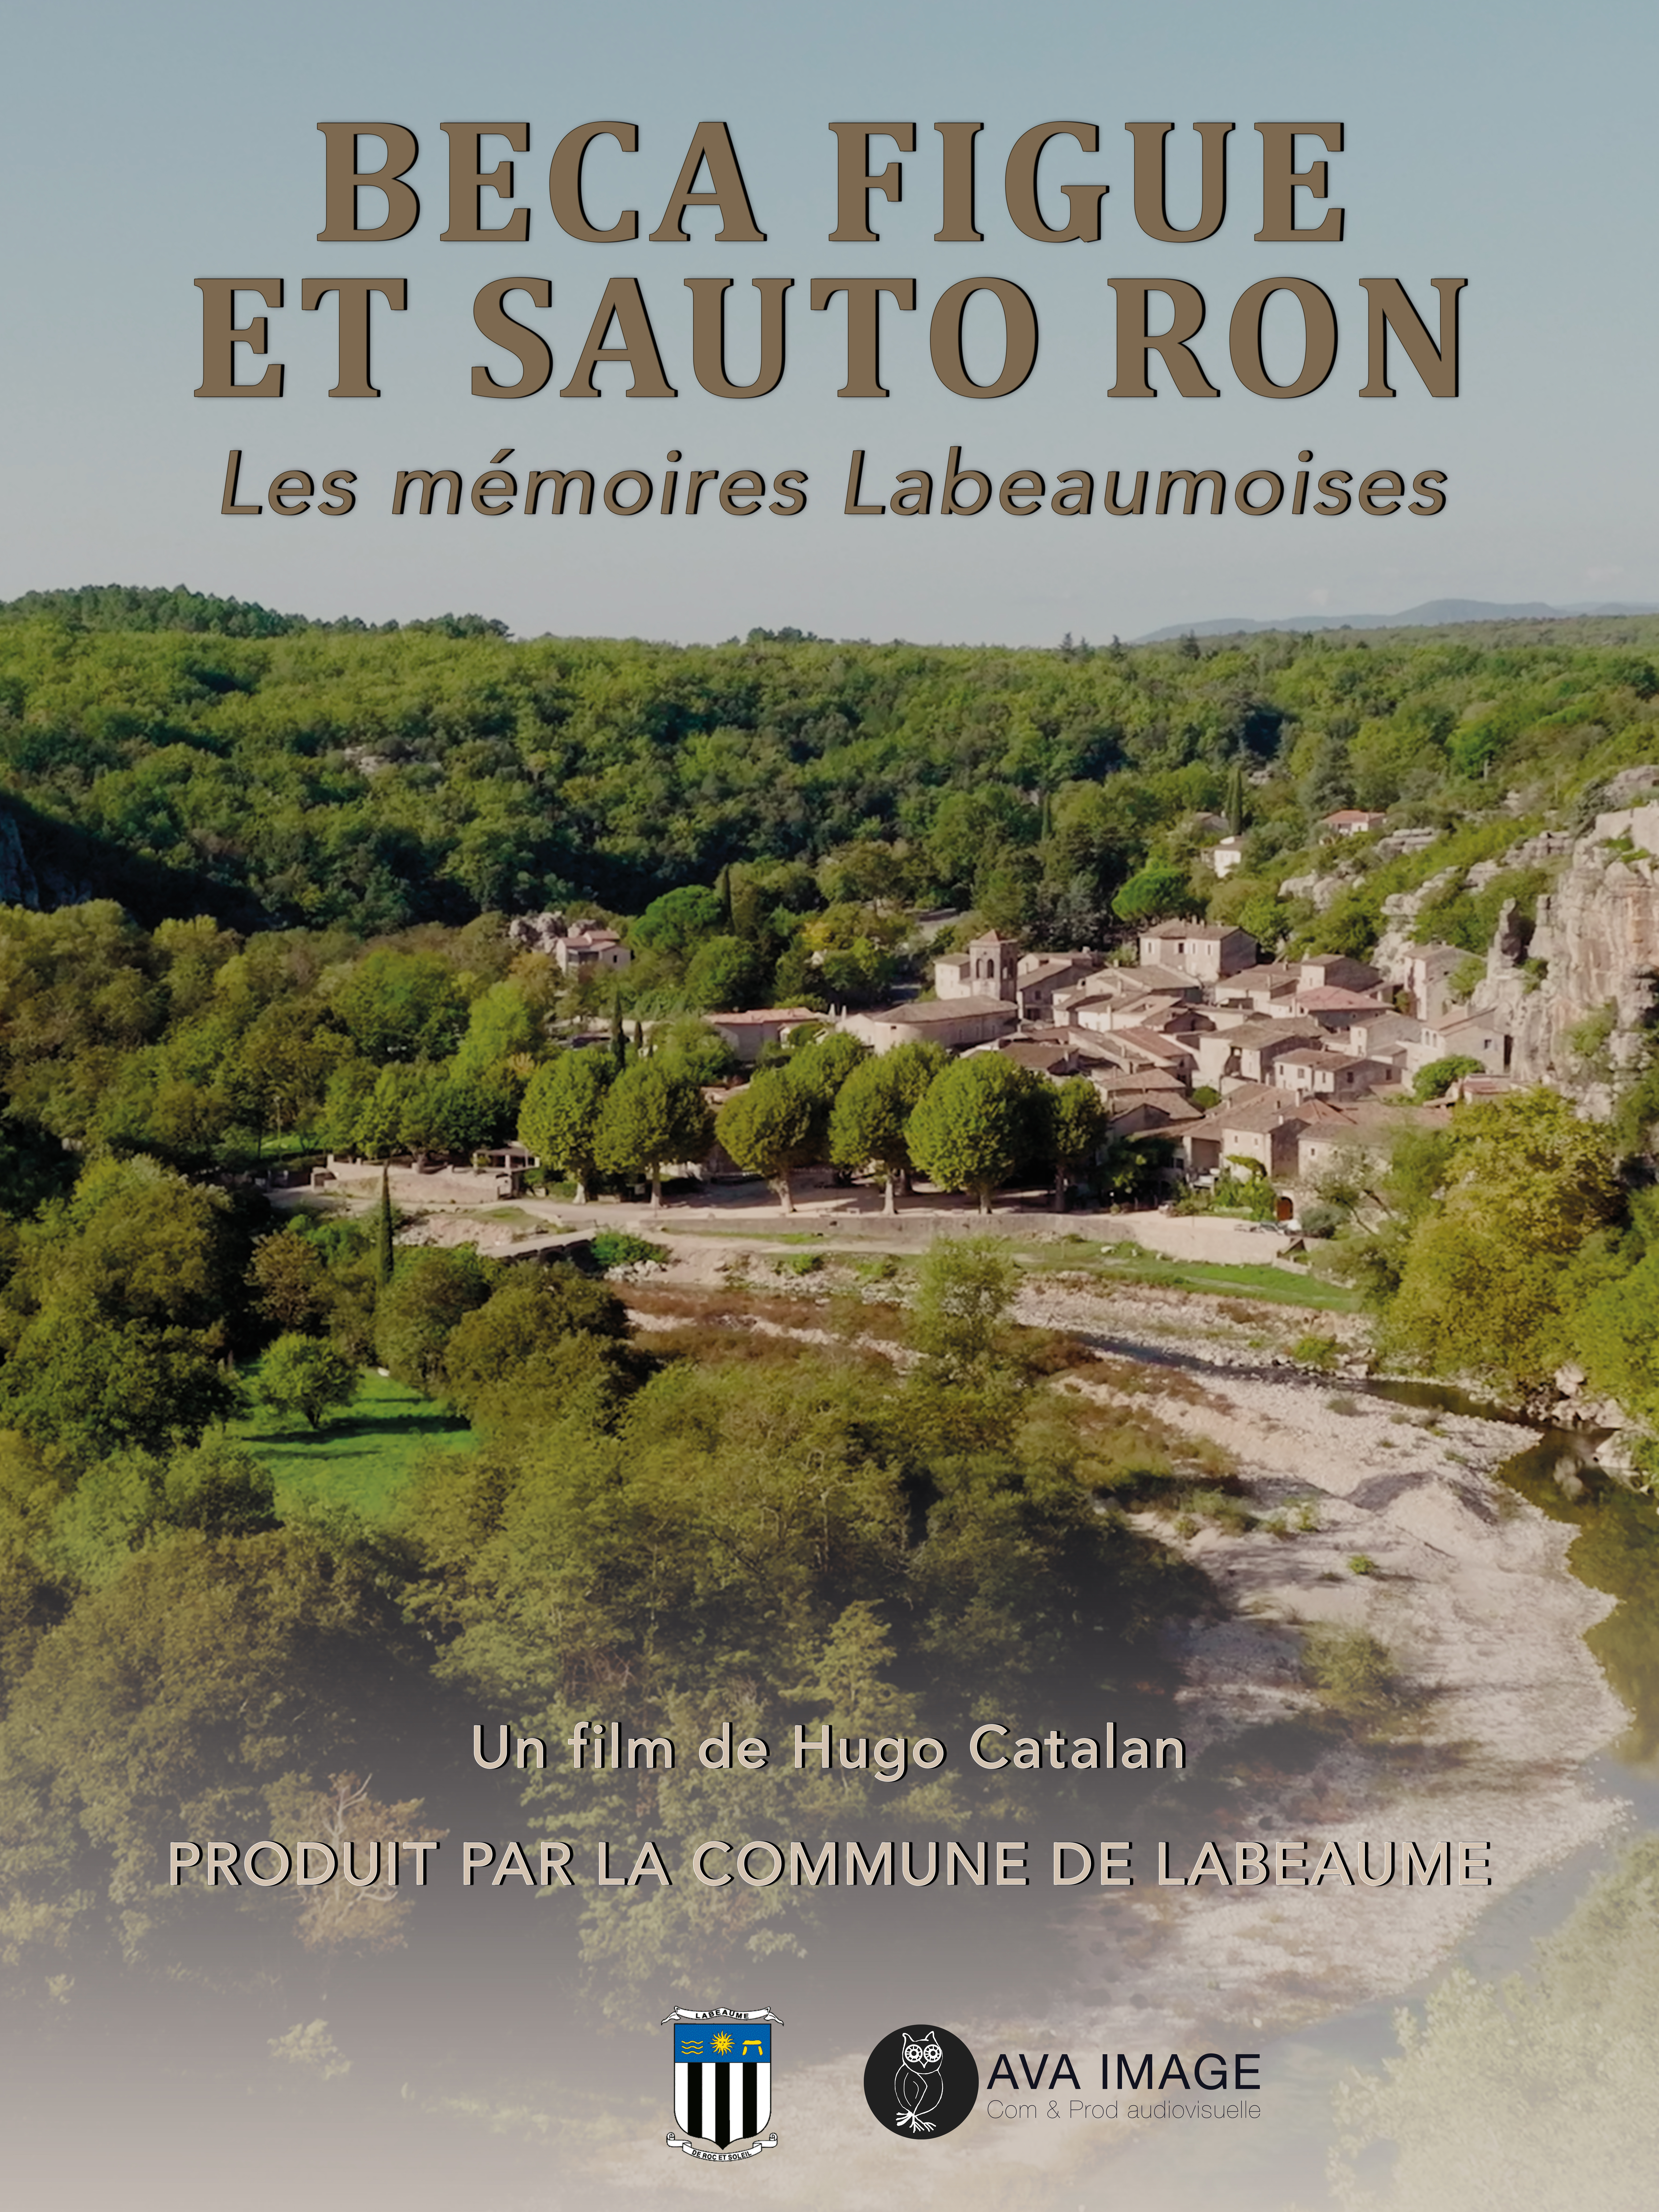 affiche officiel du film documentaire de la commune de Labeaume Beca Figue et Sauto Ron de Hugo Catalan